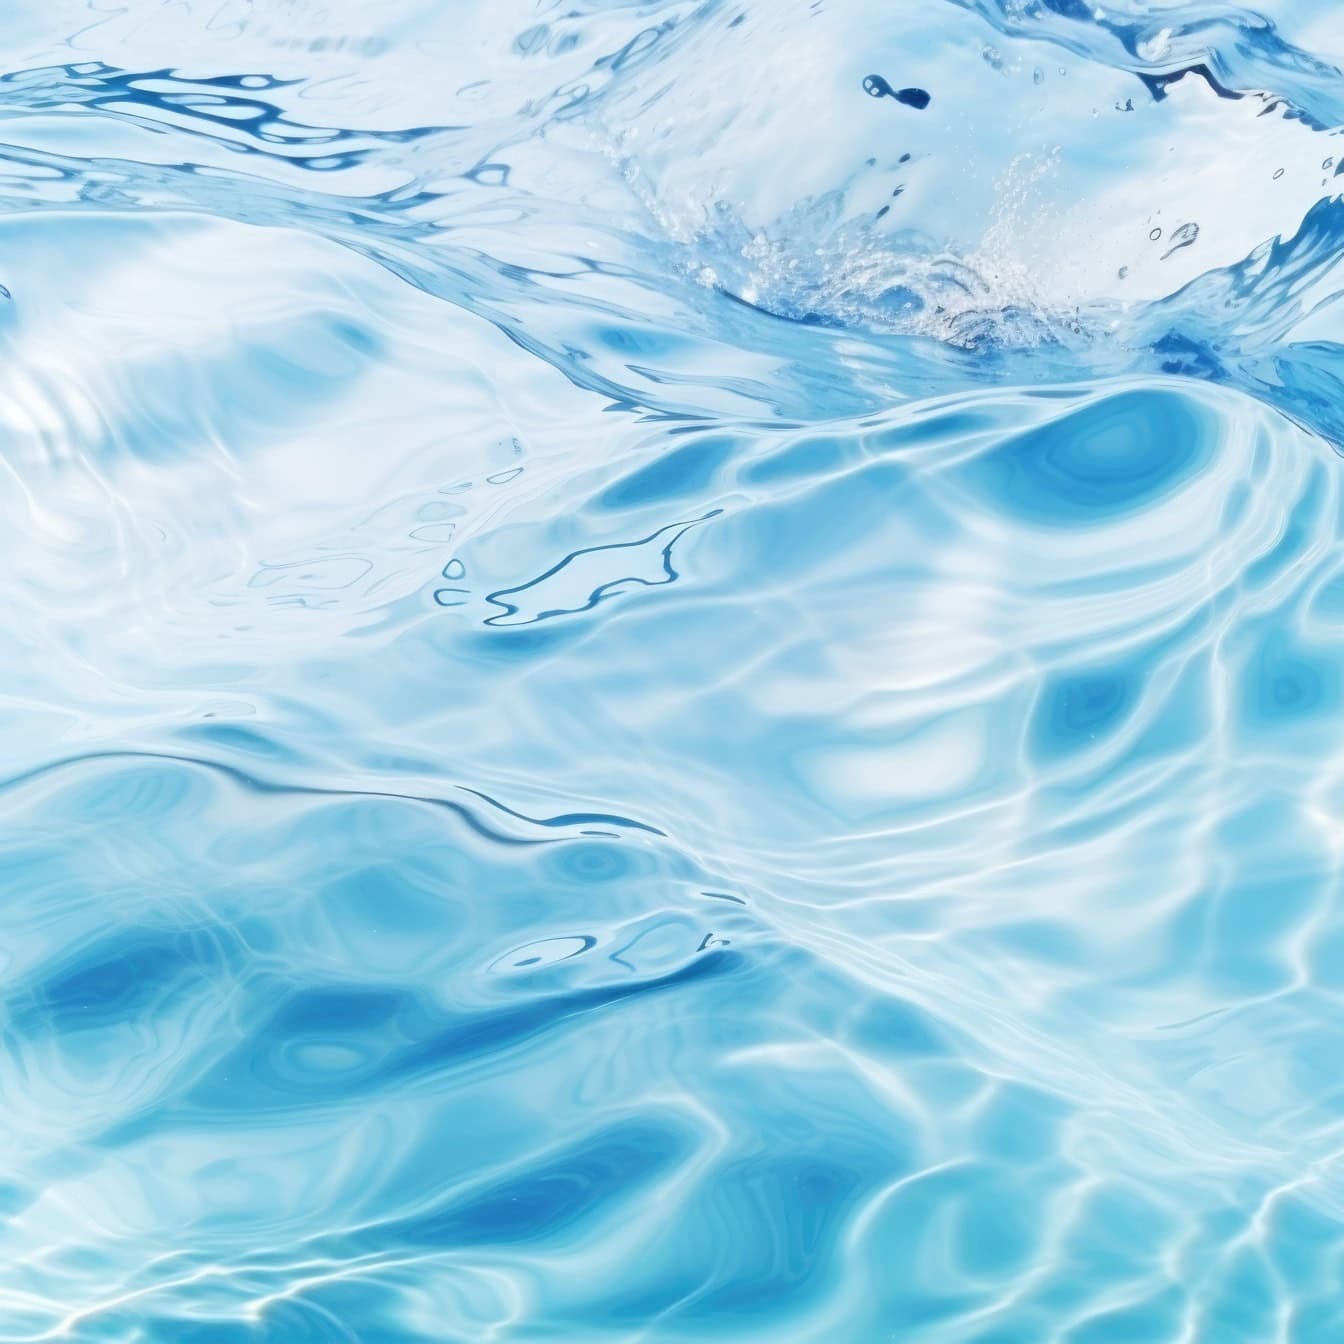 Superficie turquesa semitransparente del agua con olas que salpican, ilustración del movimiento de los fluidos